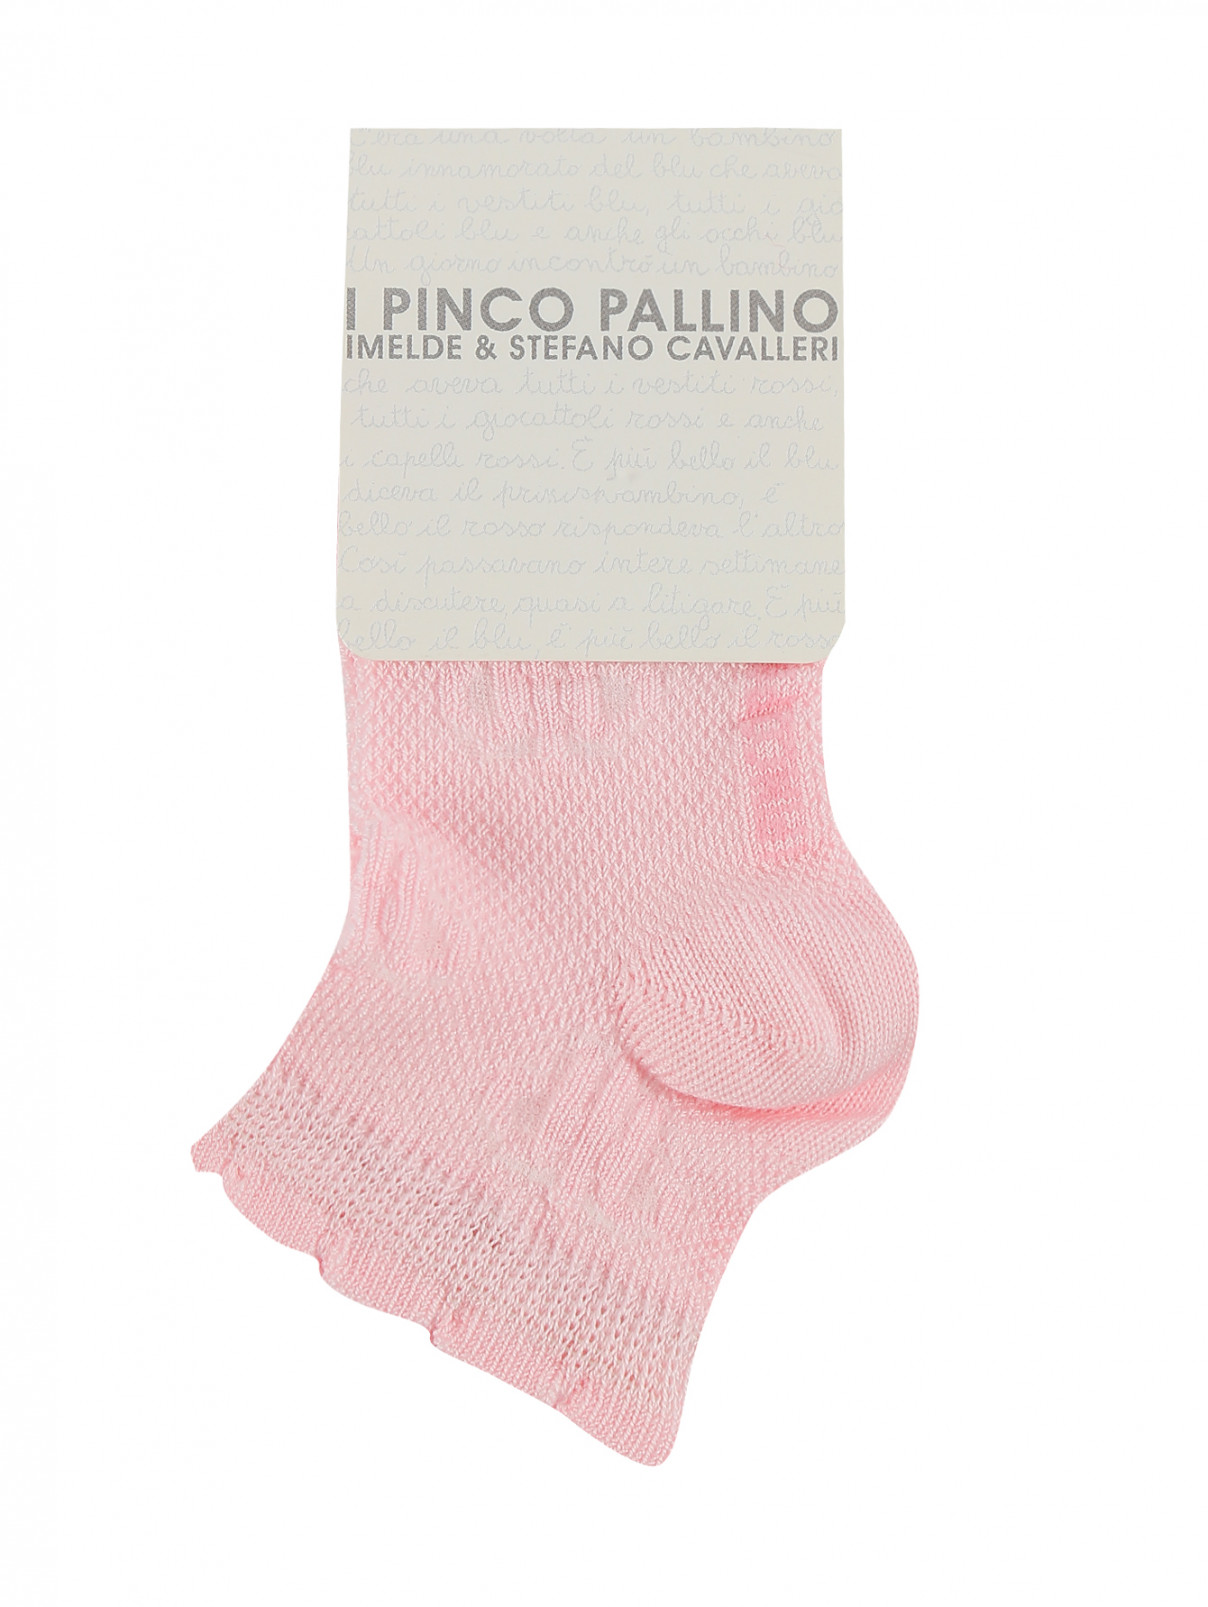 Носки из хлопка I Pinco Pallino  –  Общий вид  – Цвет:  Розовый